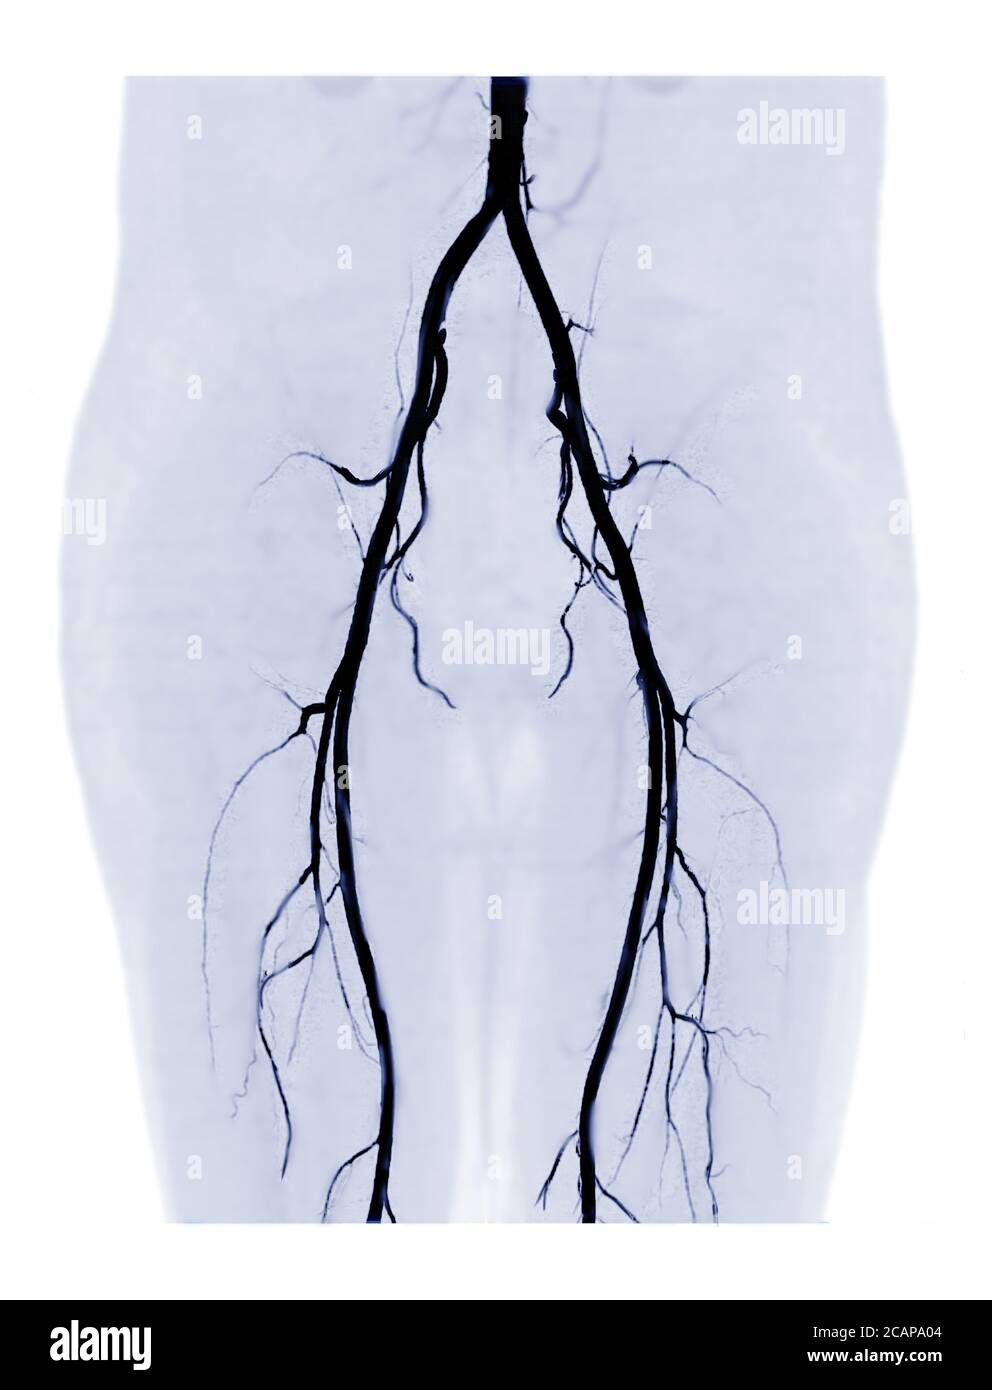 L'artère fémorale CTA affiche une image MIP 3D de l'artère fémorale pour le diagnostic de la maladie artérielle périphérique aiguë ou chronique et de la lésion de l'artère fémorale. Banque D'Images